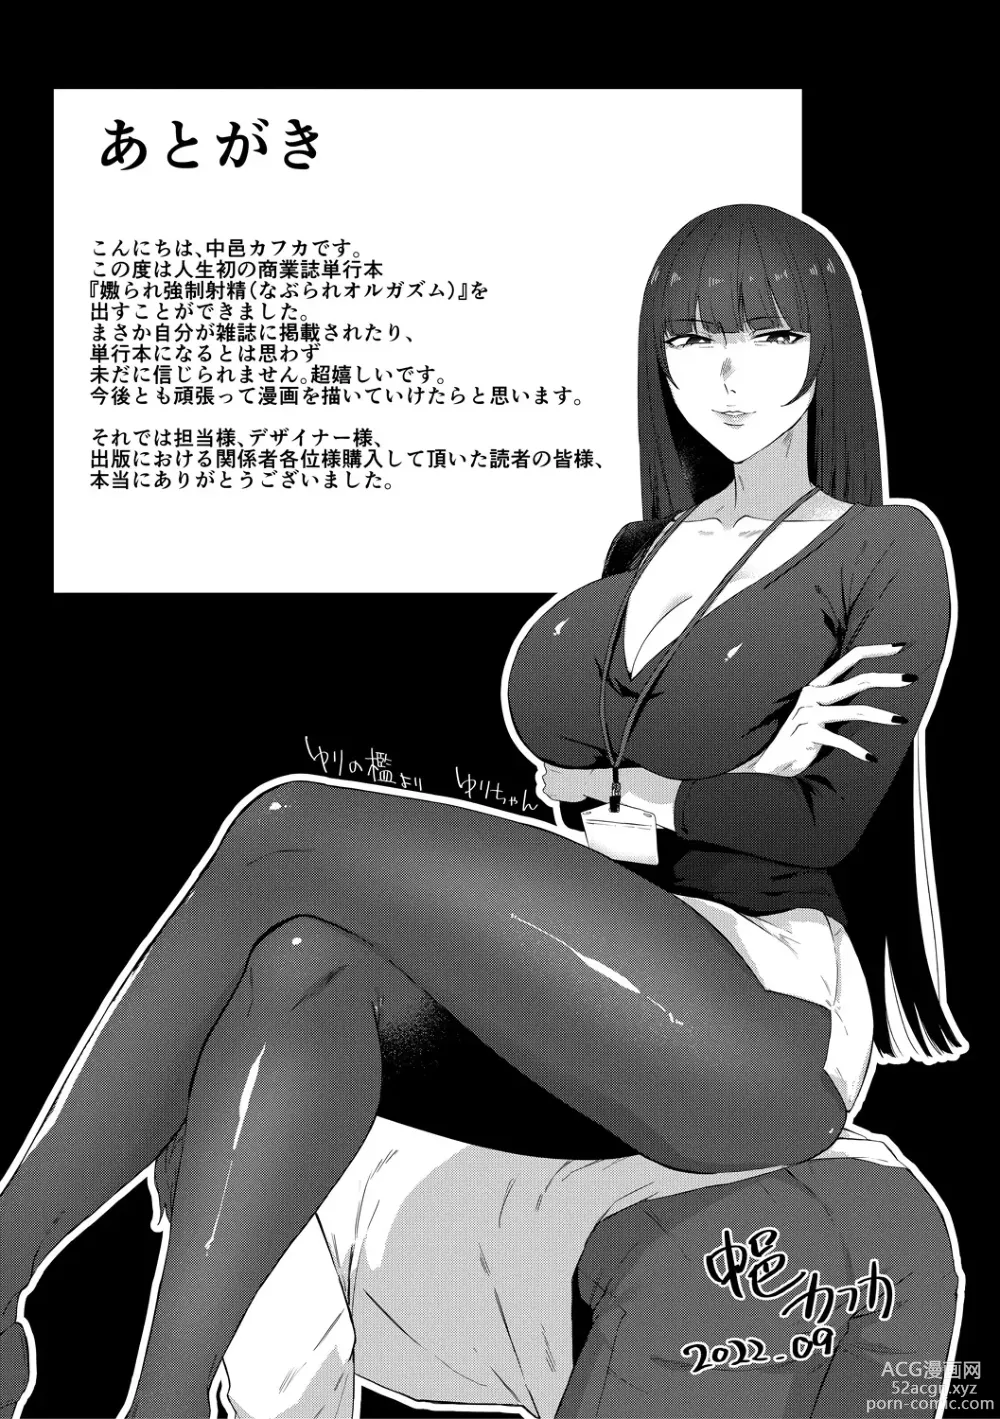 Page 193 of manga Naburare  Orgasm